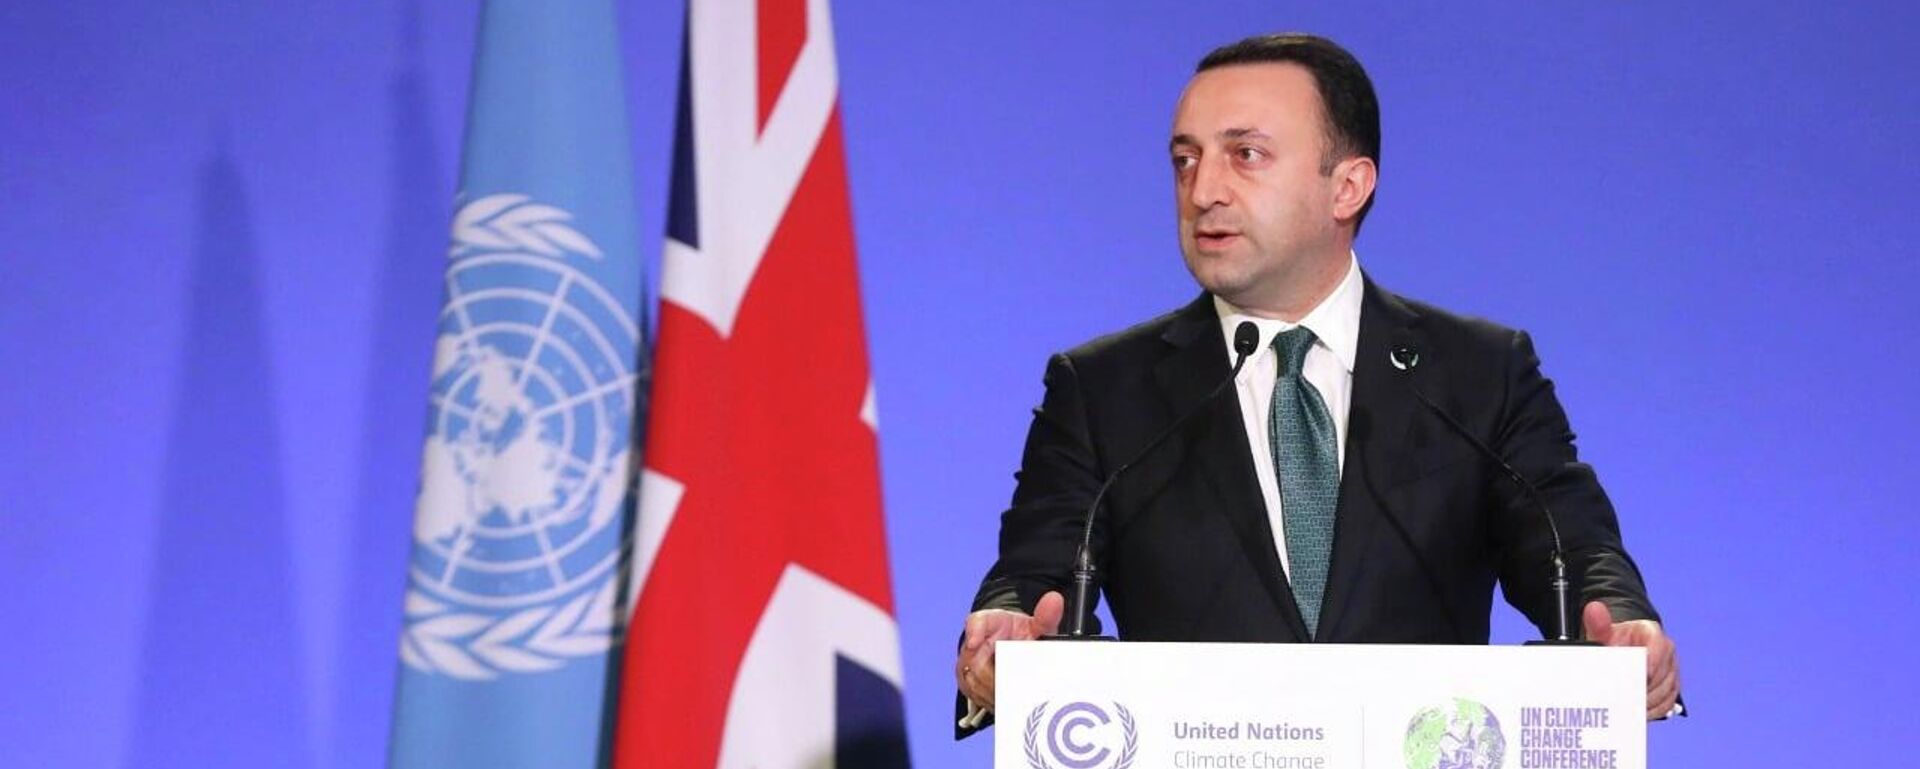 Премьер-министр Грузии Ираклий Гарибашвили на конференции ООН по изменению климата - Sputnik Грузия, 1920, 01.11.2021